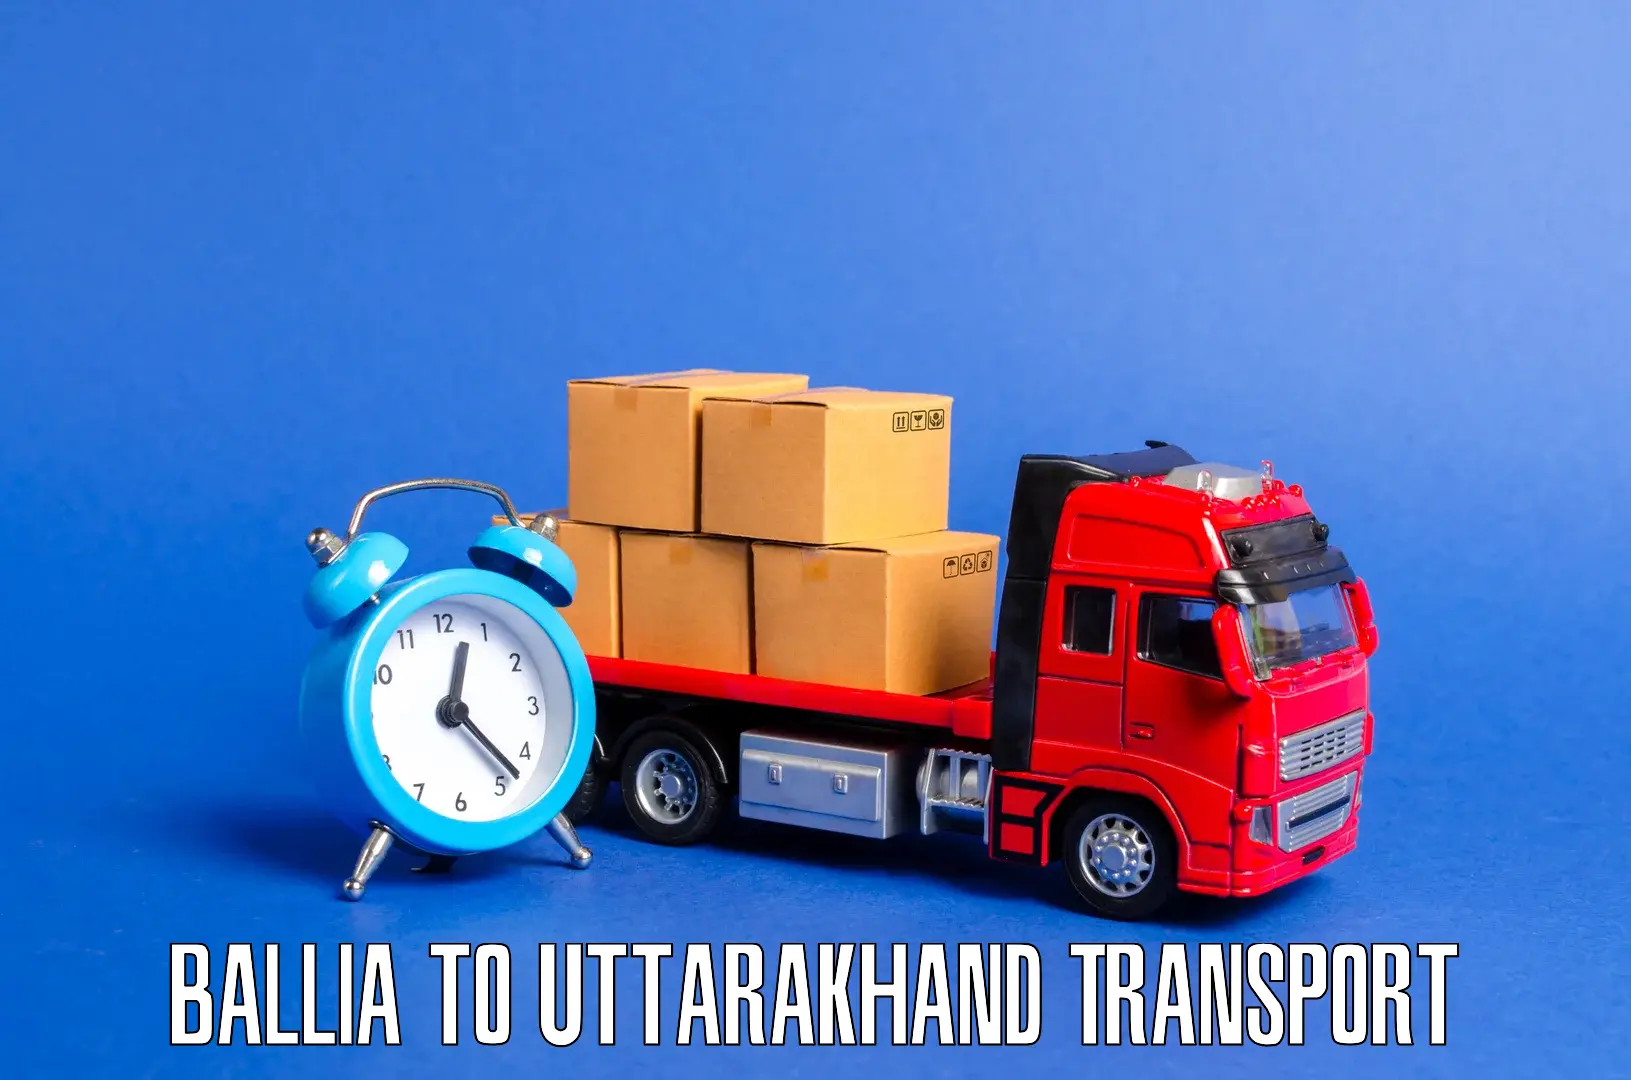 Nearest transport service Ballia to Paithani